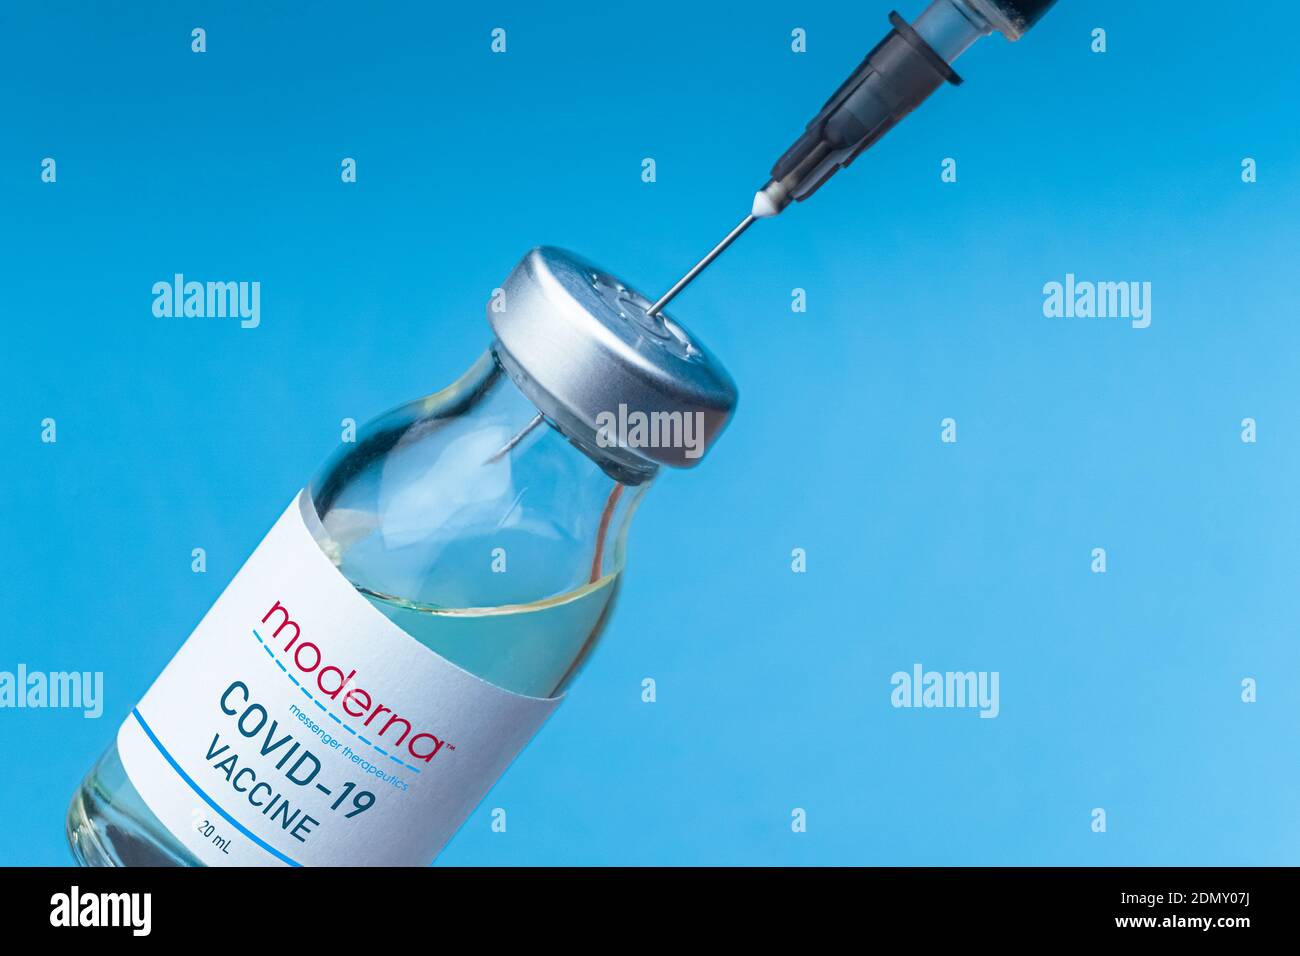 Izmir, Turchia - Agosto 11 2020: Concetto e background del vaccino del coronavirus. Nuovo vaccino moderato isolato su sfondo blu. Covid-19, 2019-nCov pande Foto Stock